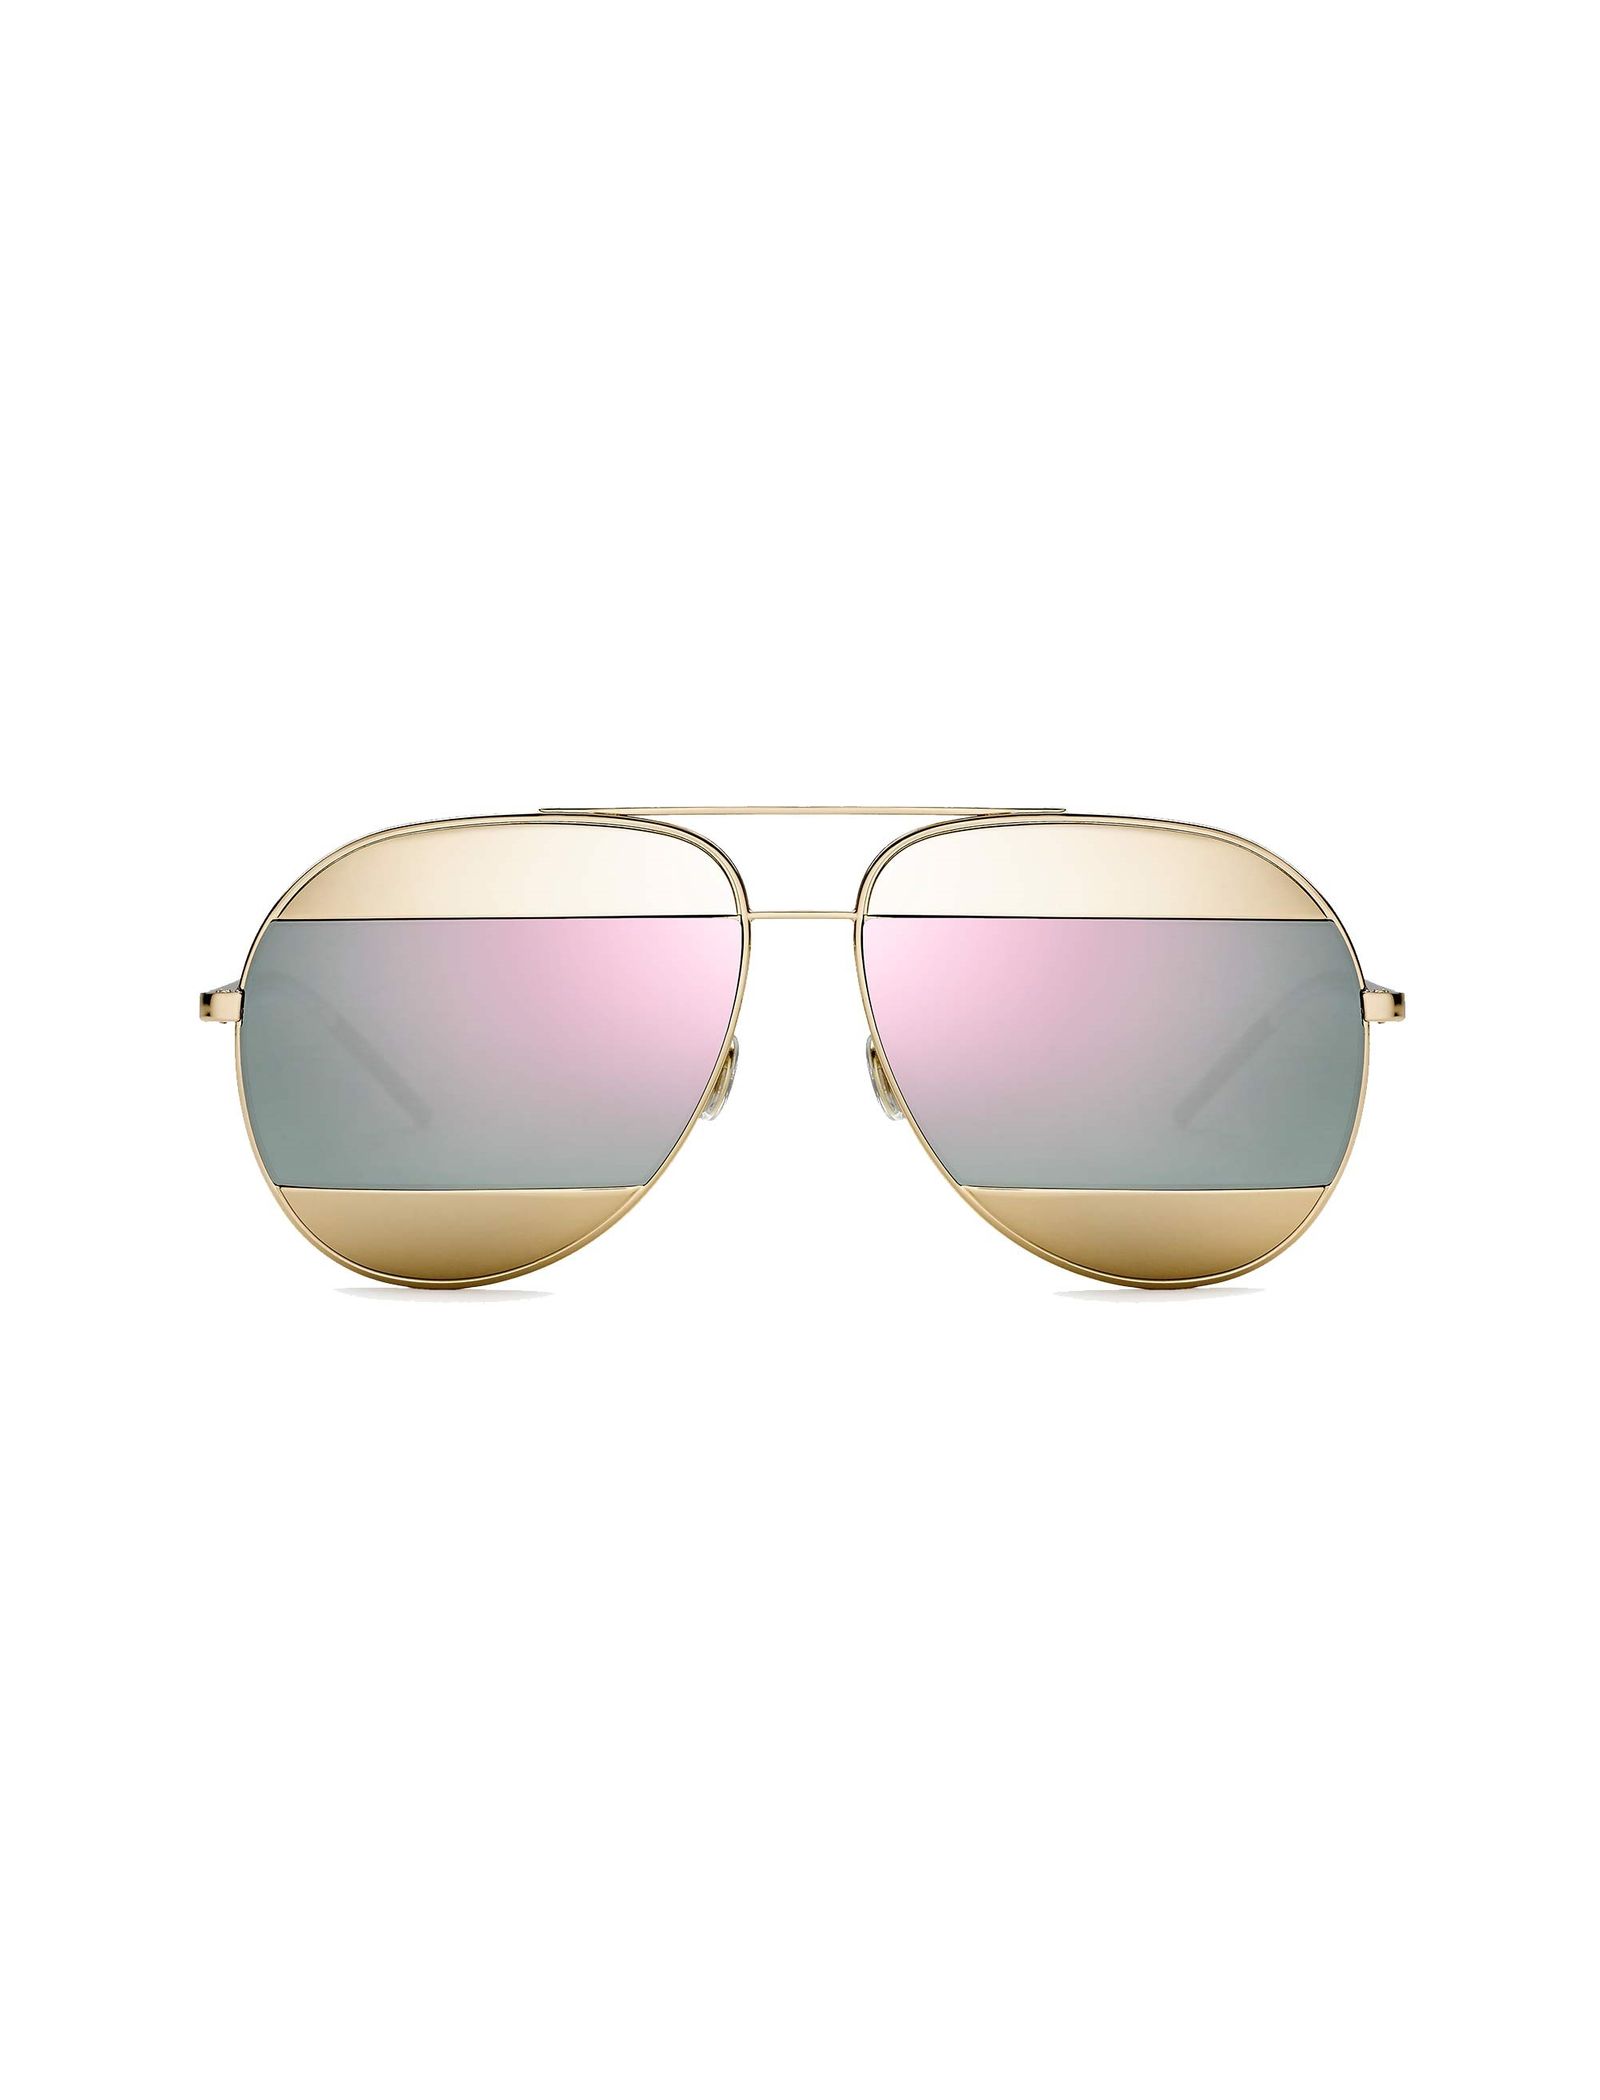 عینک آفتابی خلبانی زنانه - دیور - طلايي - 2